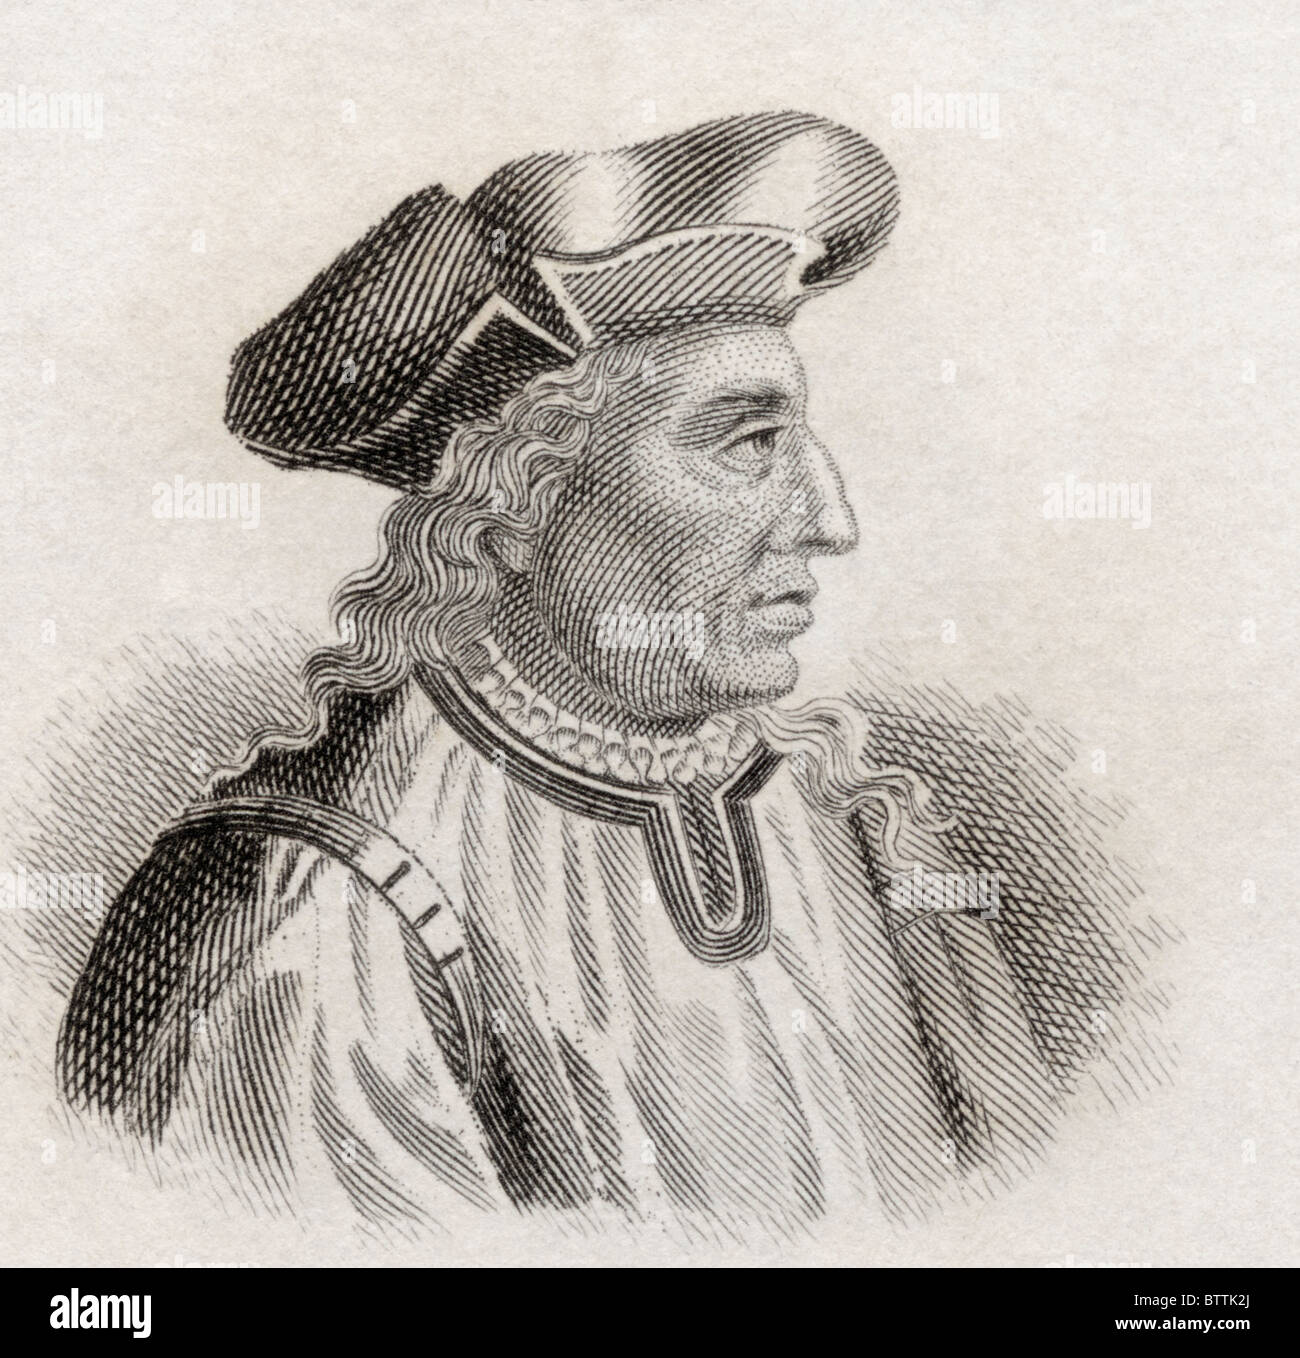 Niccolò di Bernardo dei Machiavelli, 1469 a 1527. Filosofo italiano e scrittore. Foto Stock